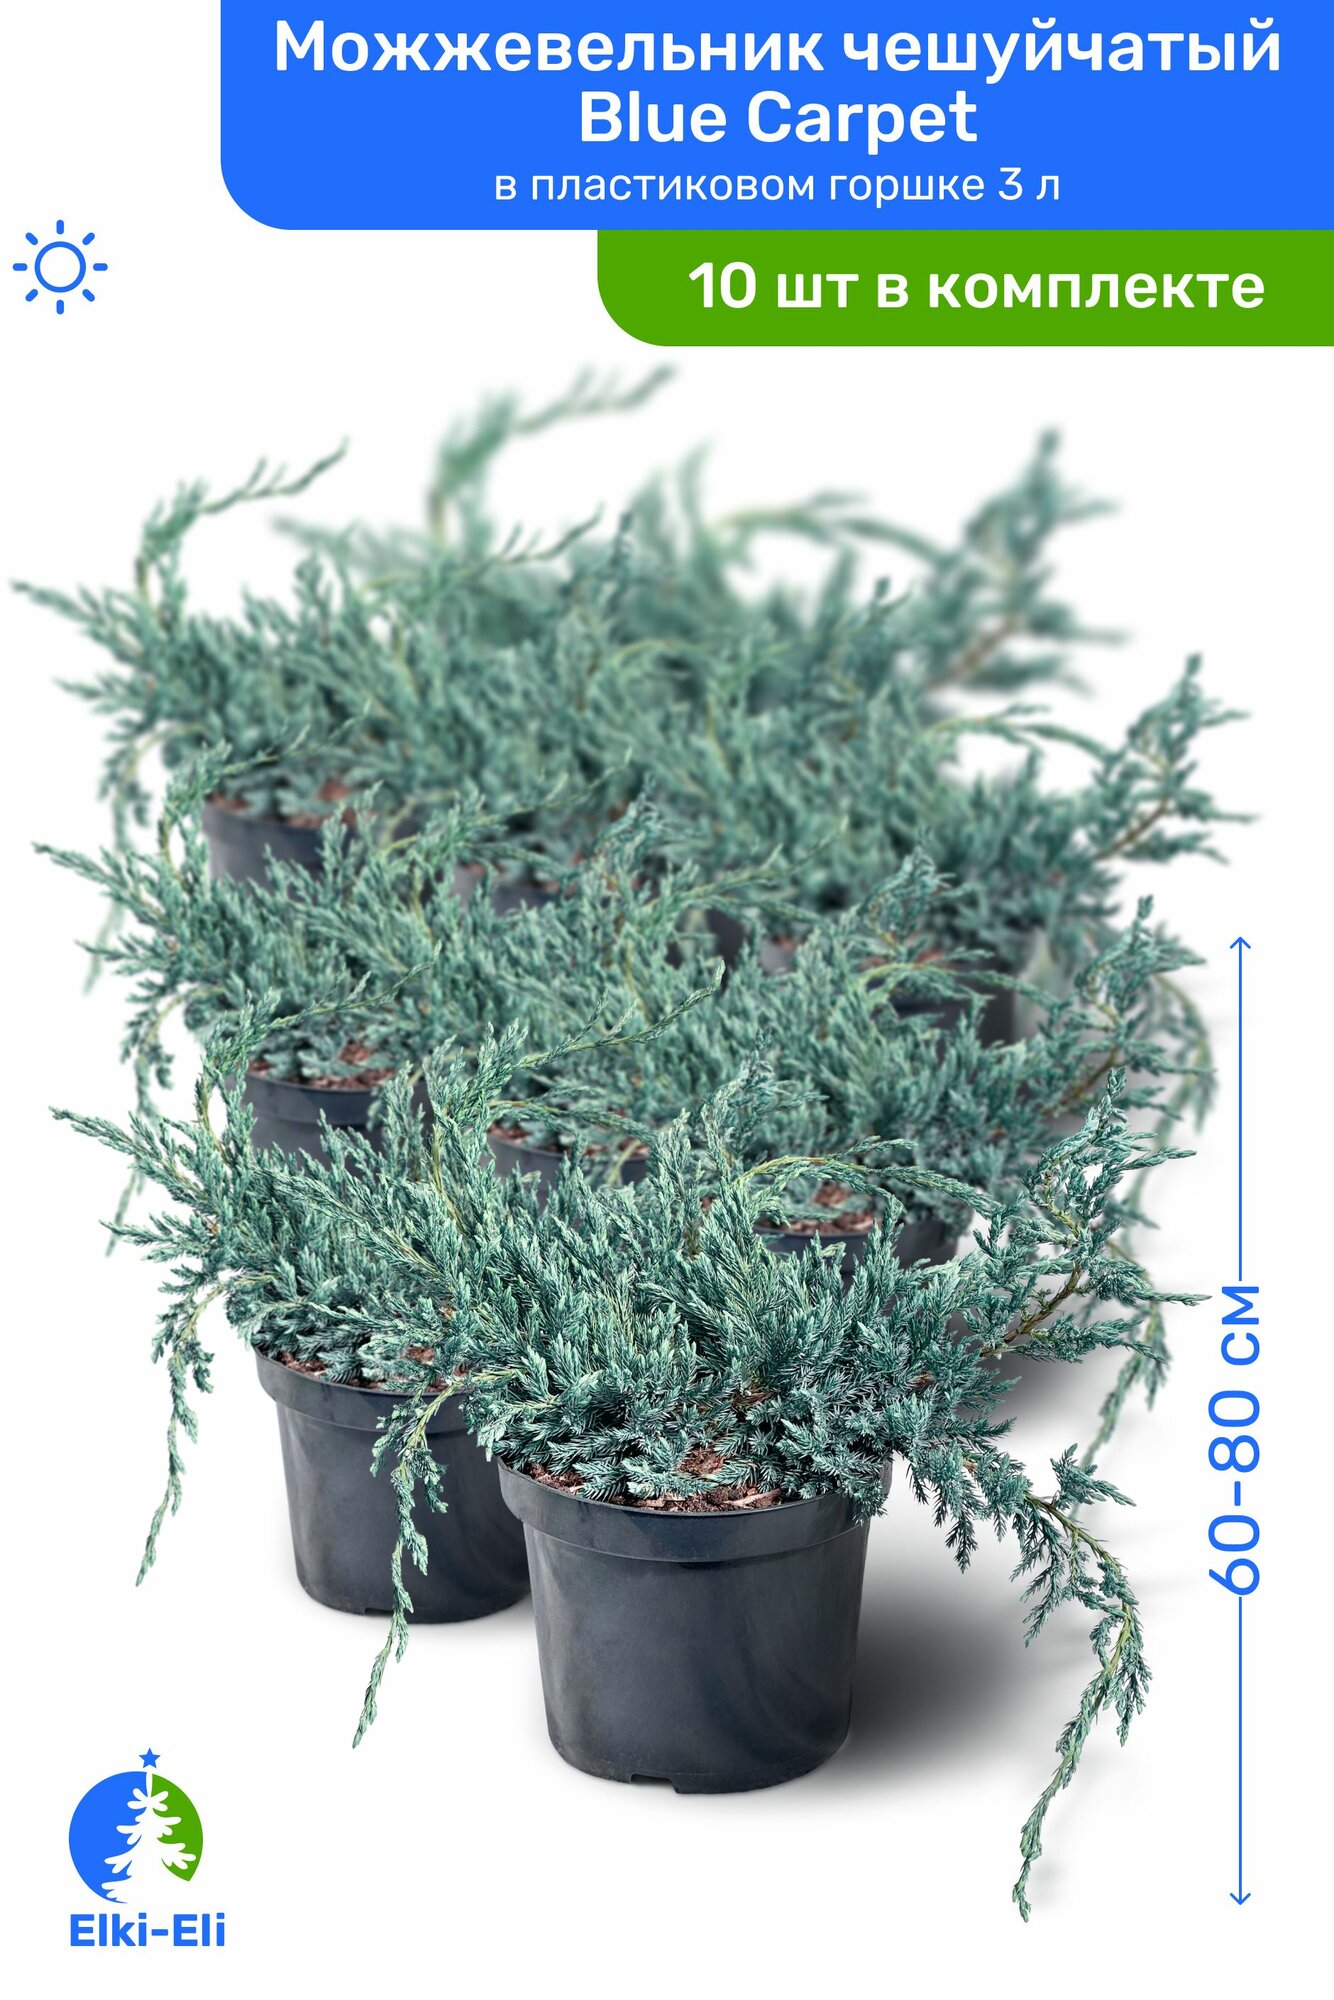 Можжевельник чешуйчатый Blue Carpet (Блю Карпет) 60-80 см в пластиковом горшке С3, саженец, хвойное живое растение, комплект из 10 шт